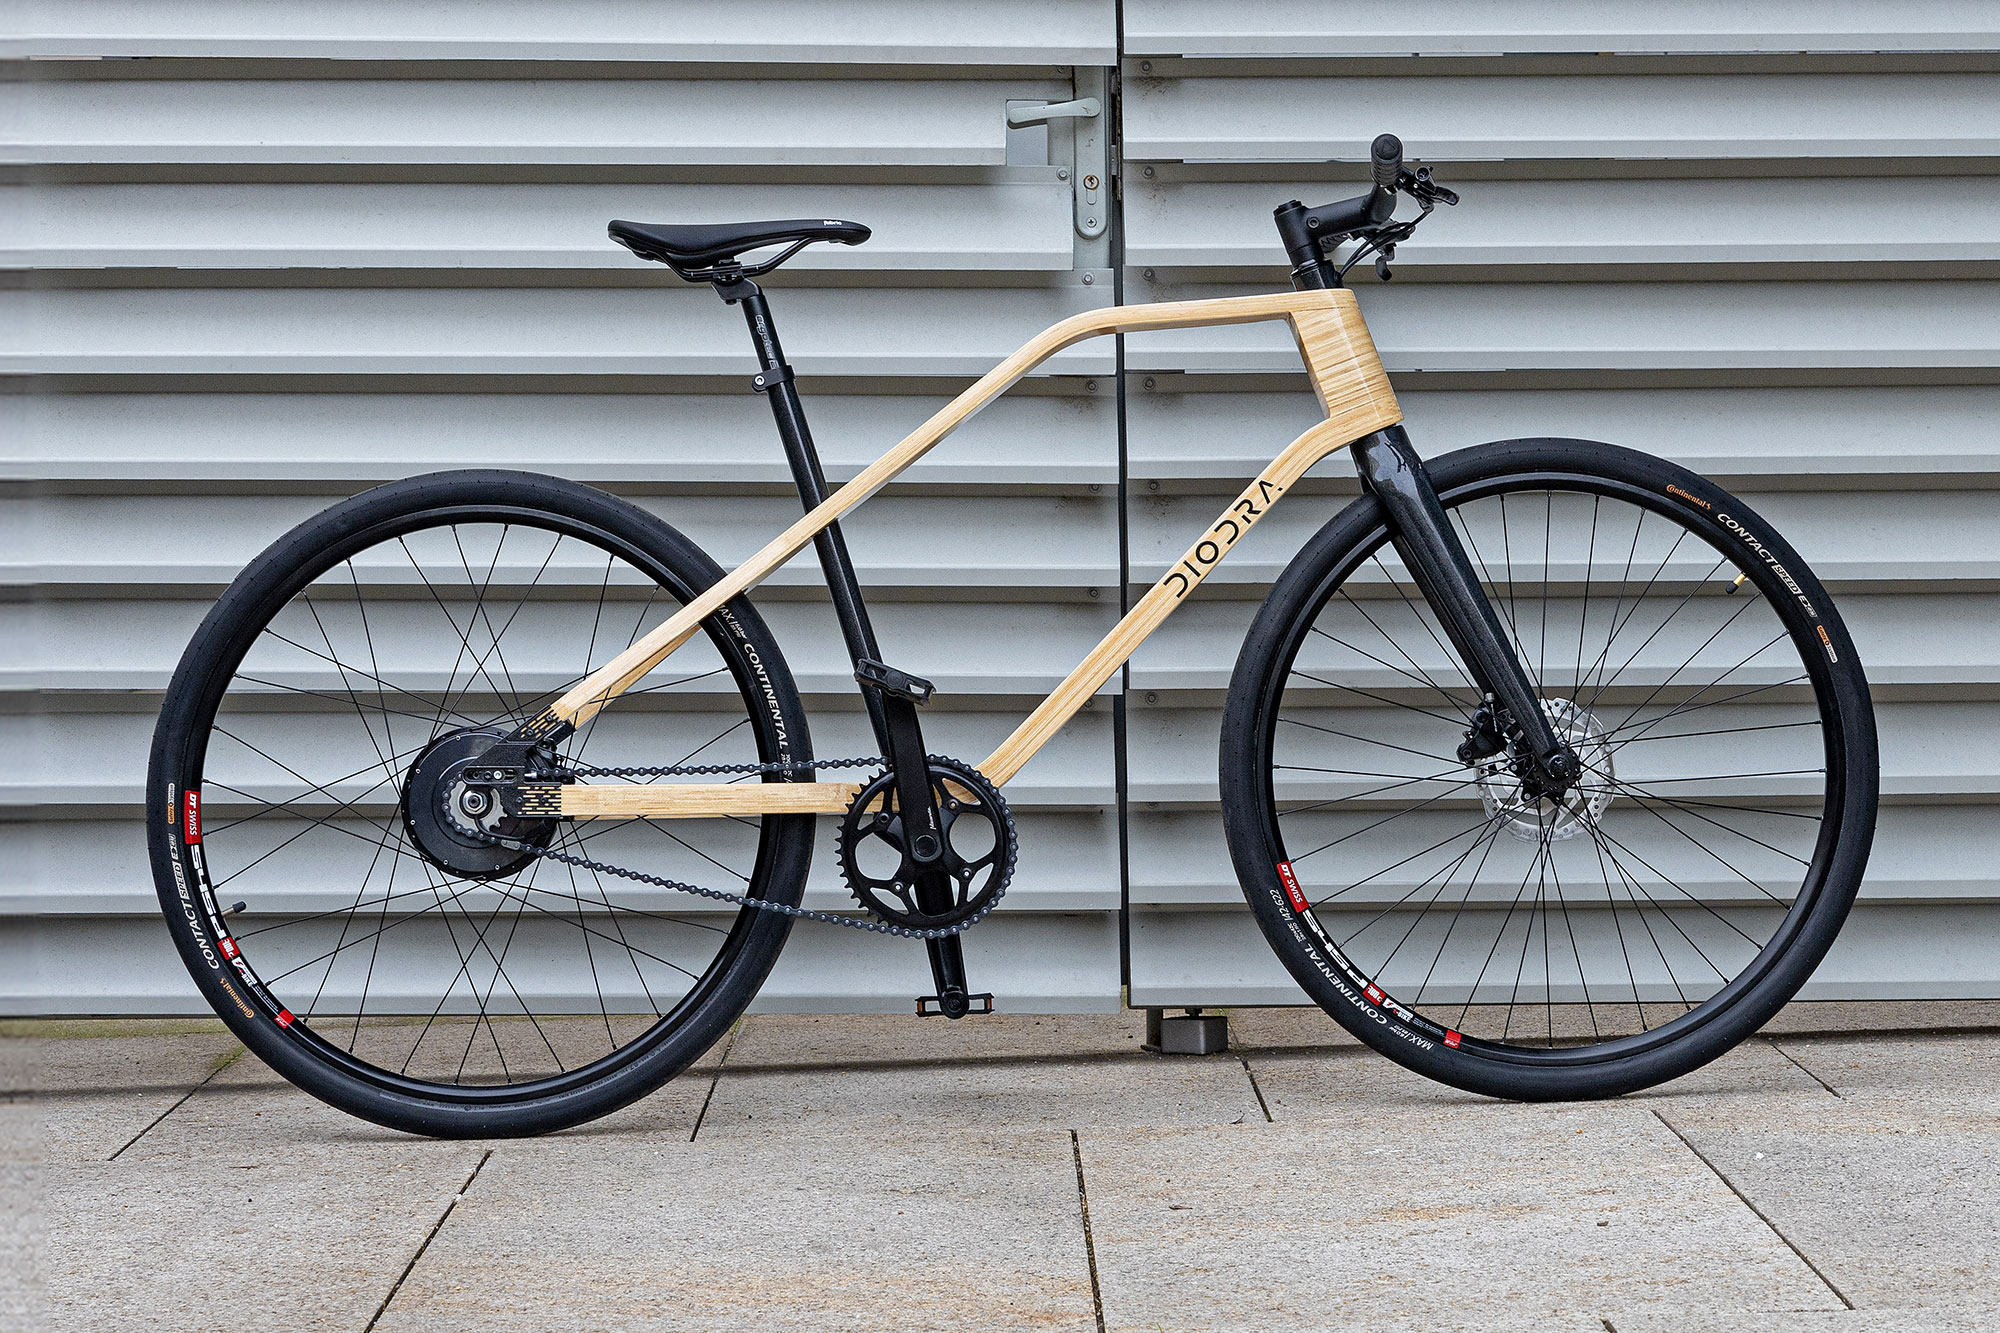 Diodra S3 presenta la bicicleta eléctrica de madera más ligera del mundo con marco de bambú laminado